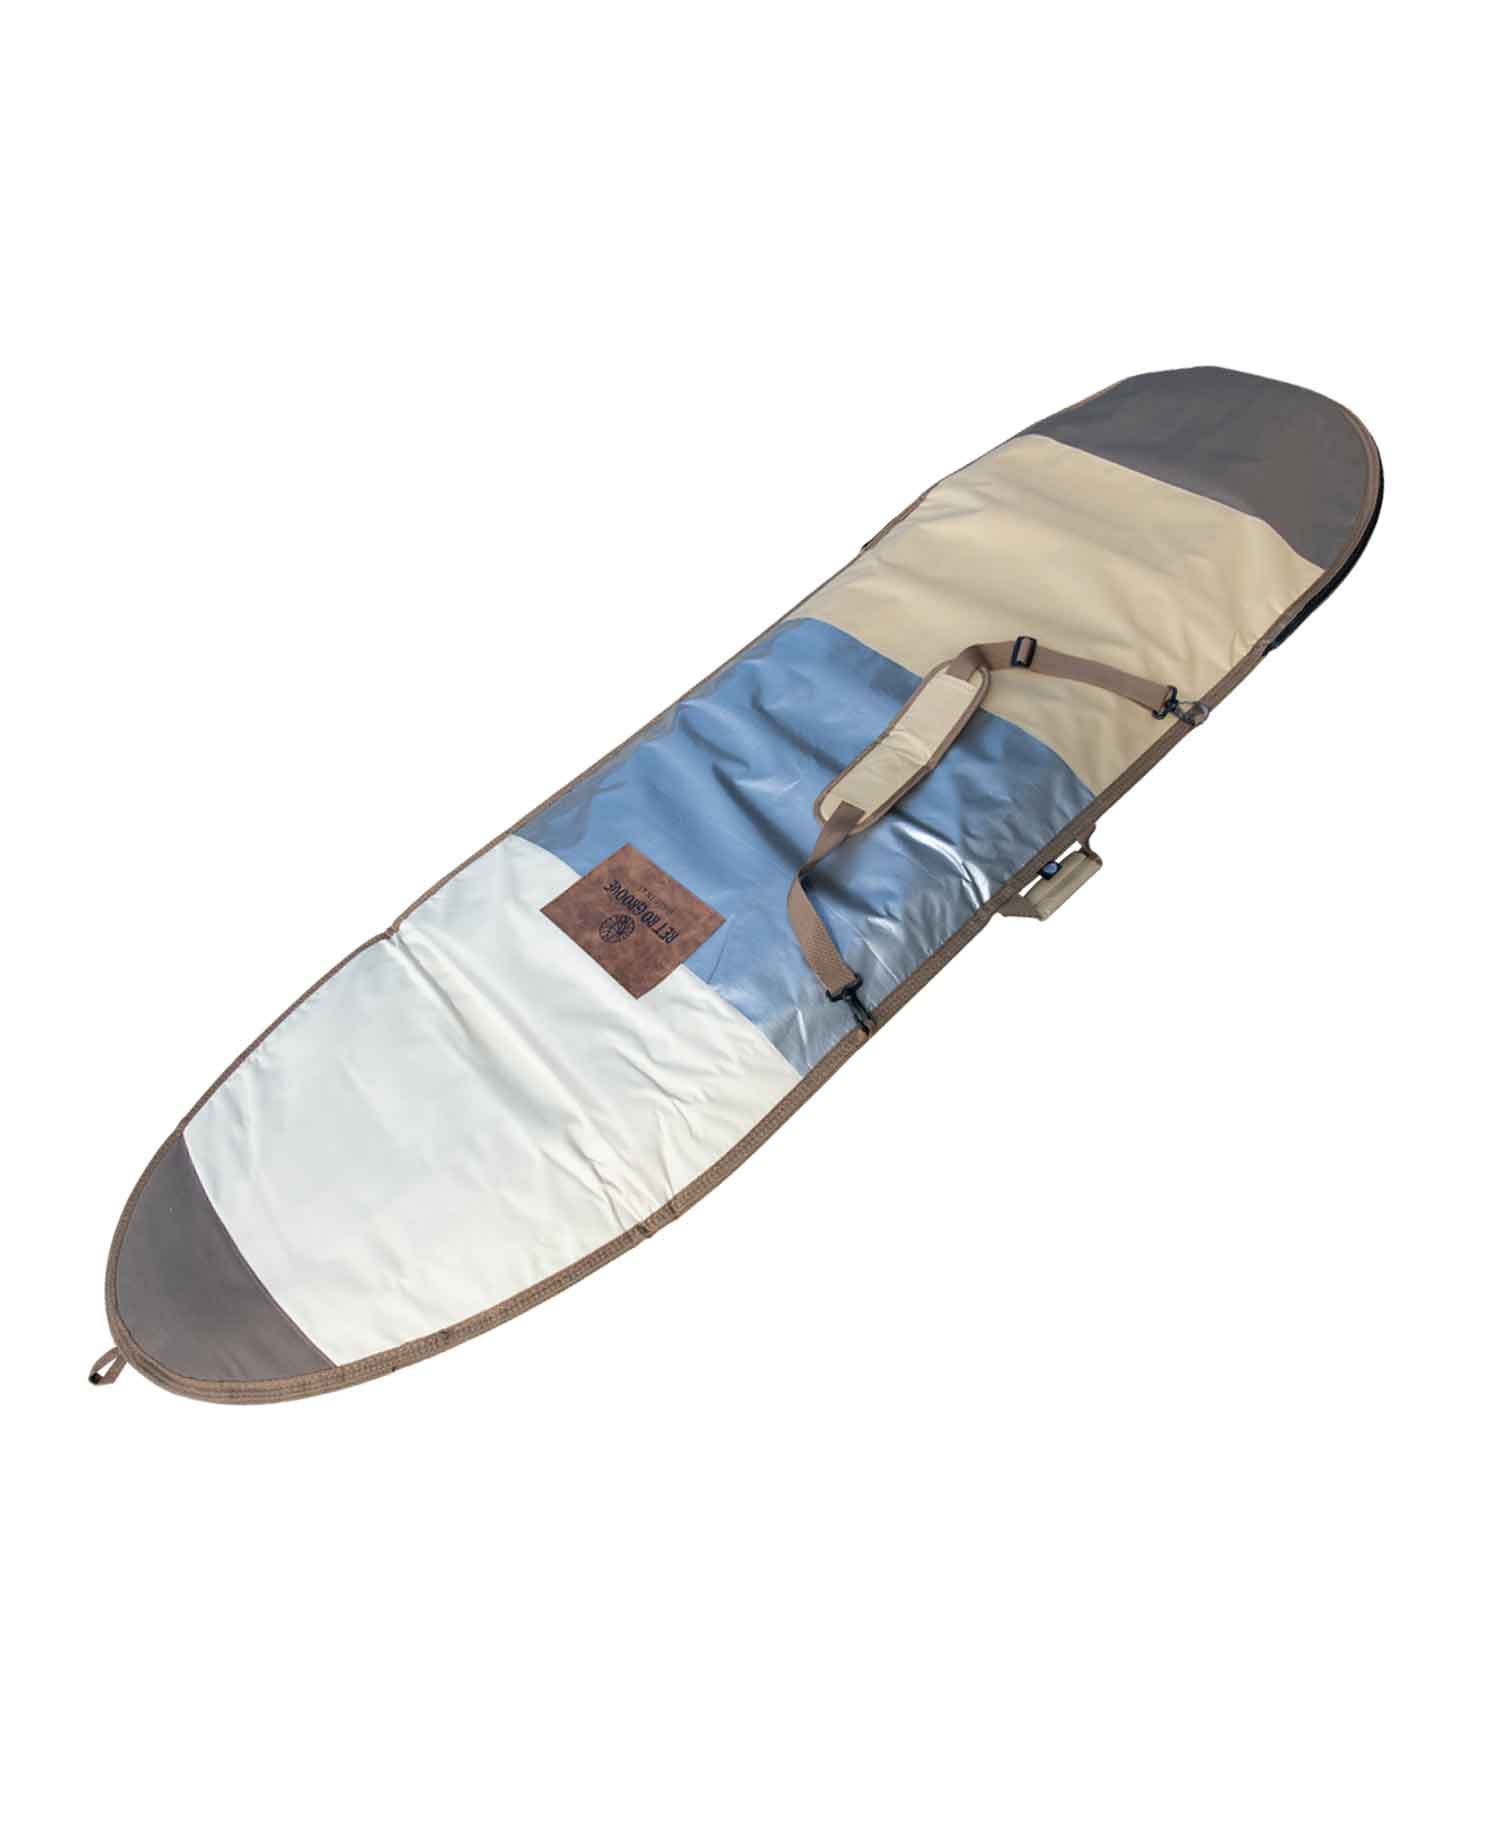 RETRO GROOVE 'NOMAD' MINI MAL SURFBOARD BAG